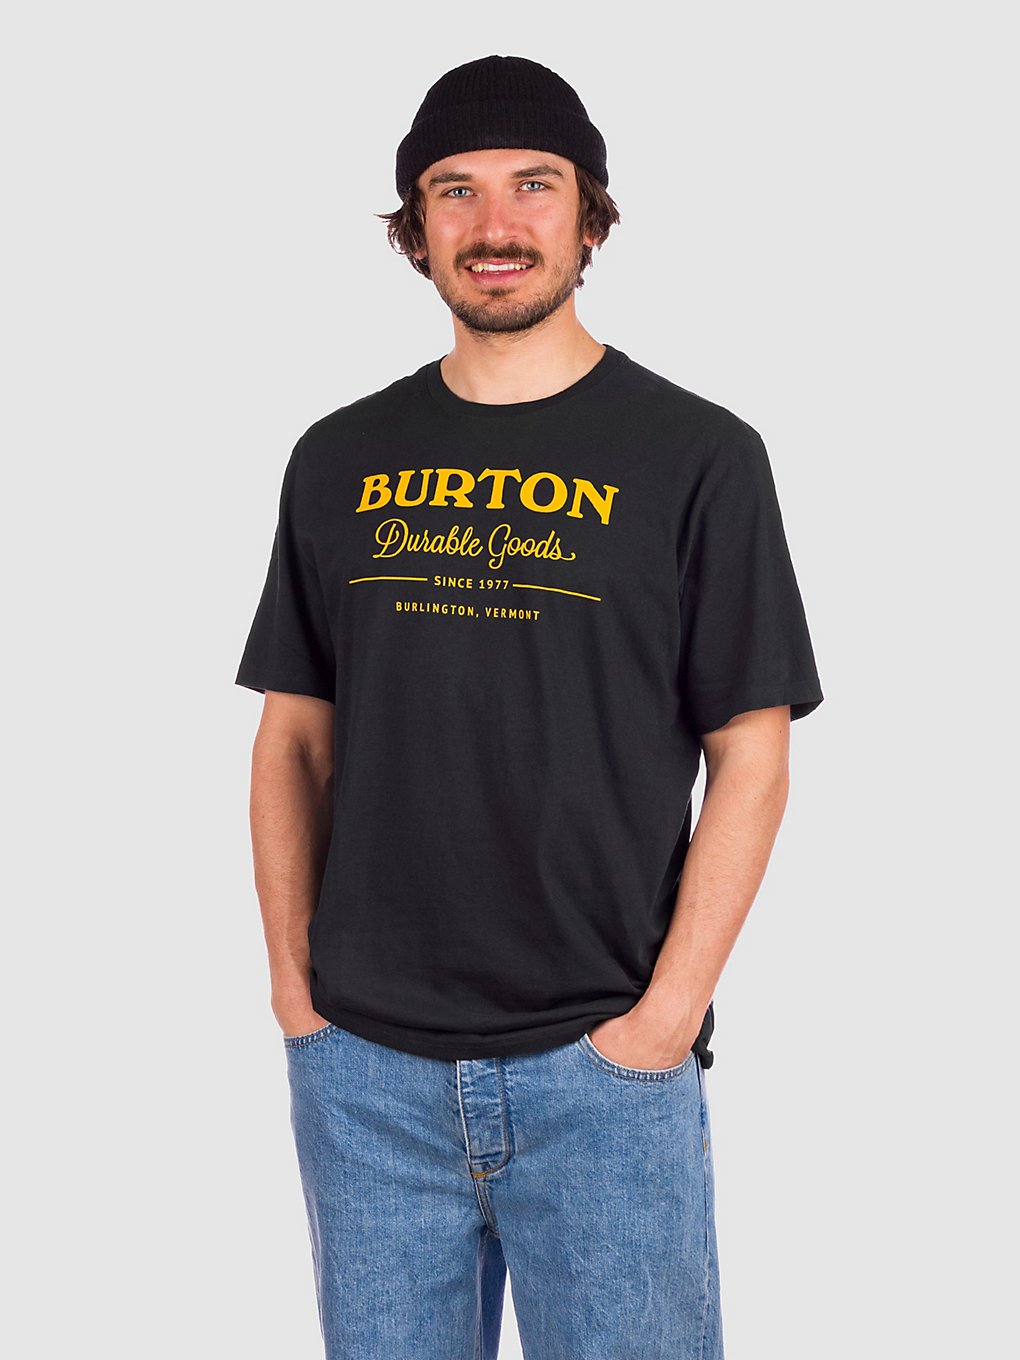 Burton Durable Goods T-Shirt noir